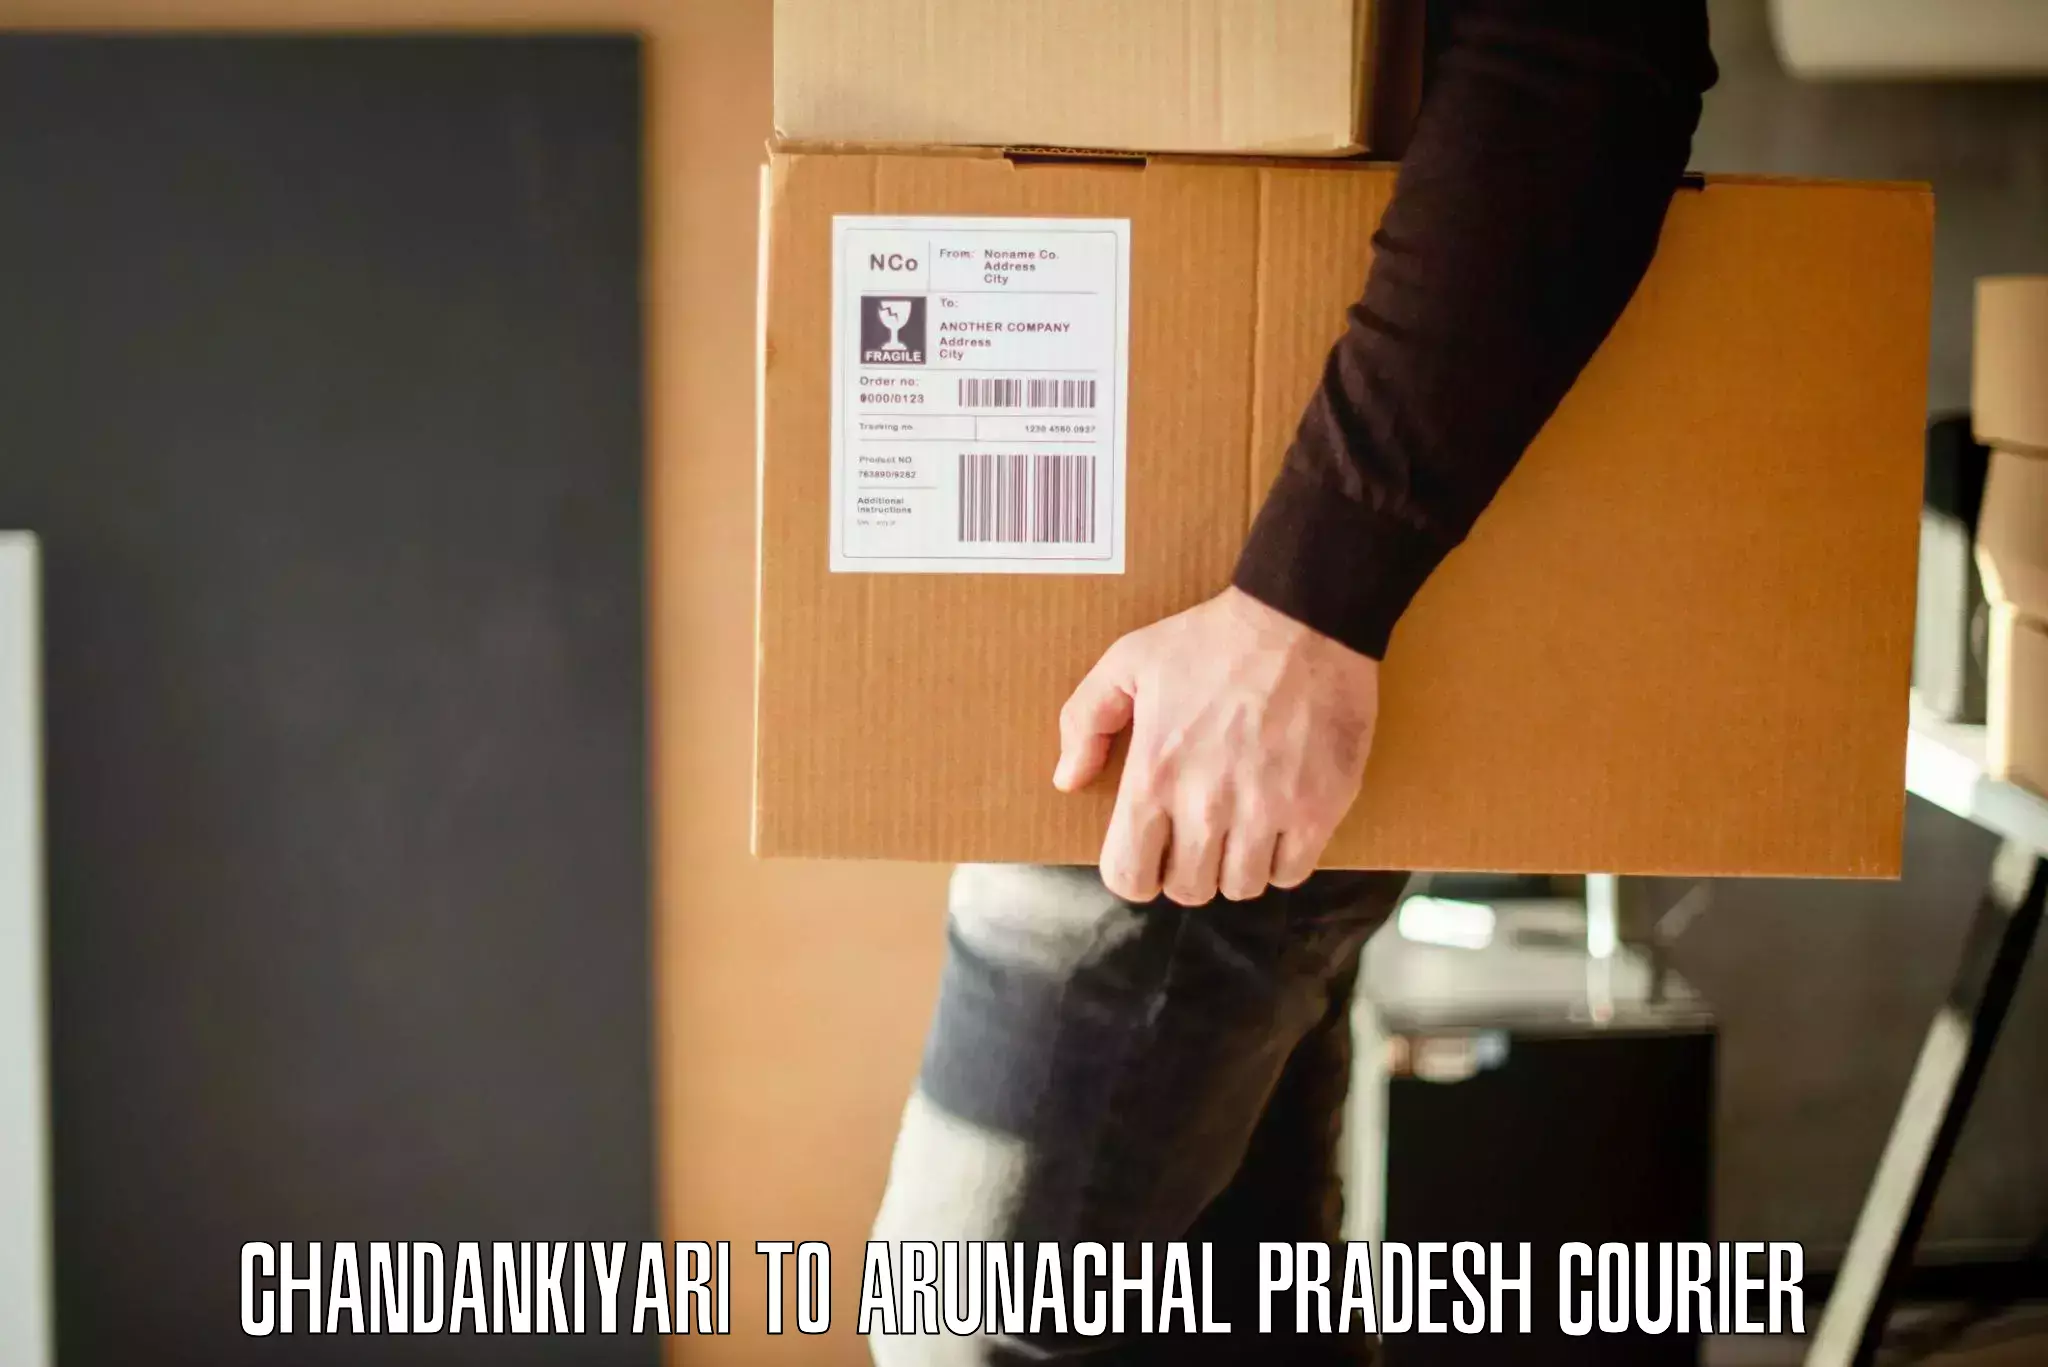 Personalized moving service Chandankiyari to Aalo